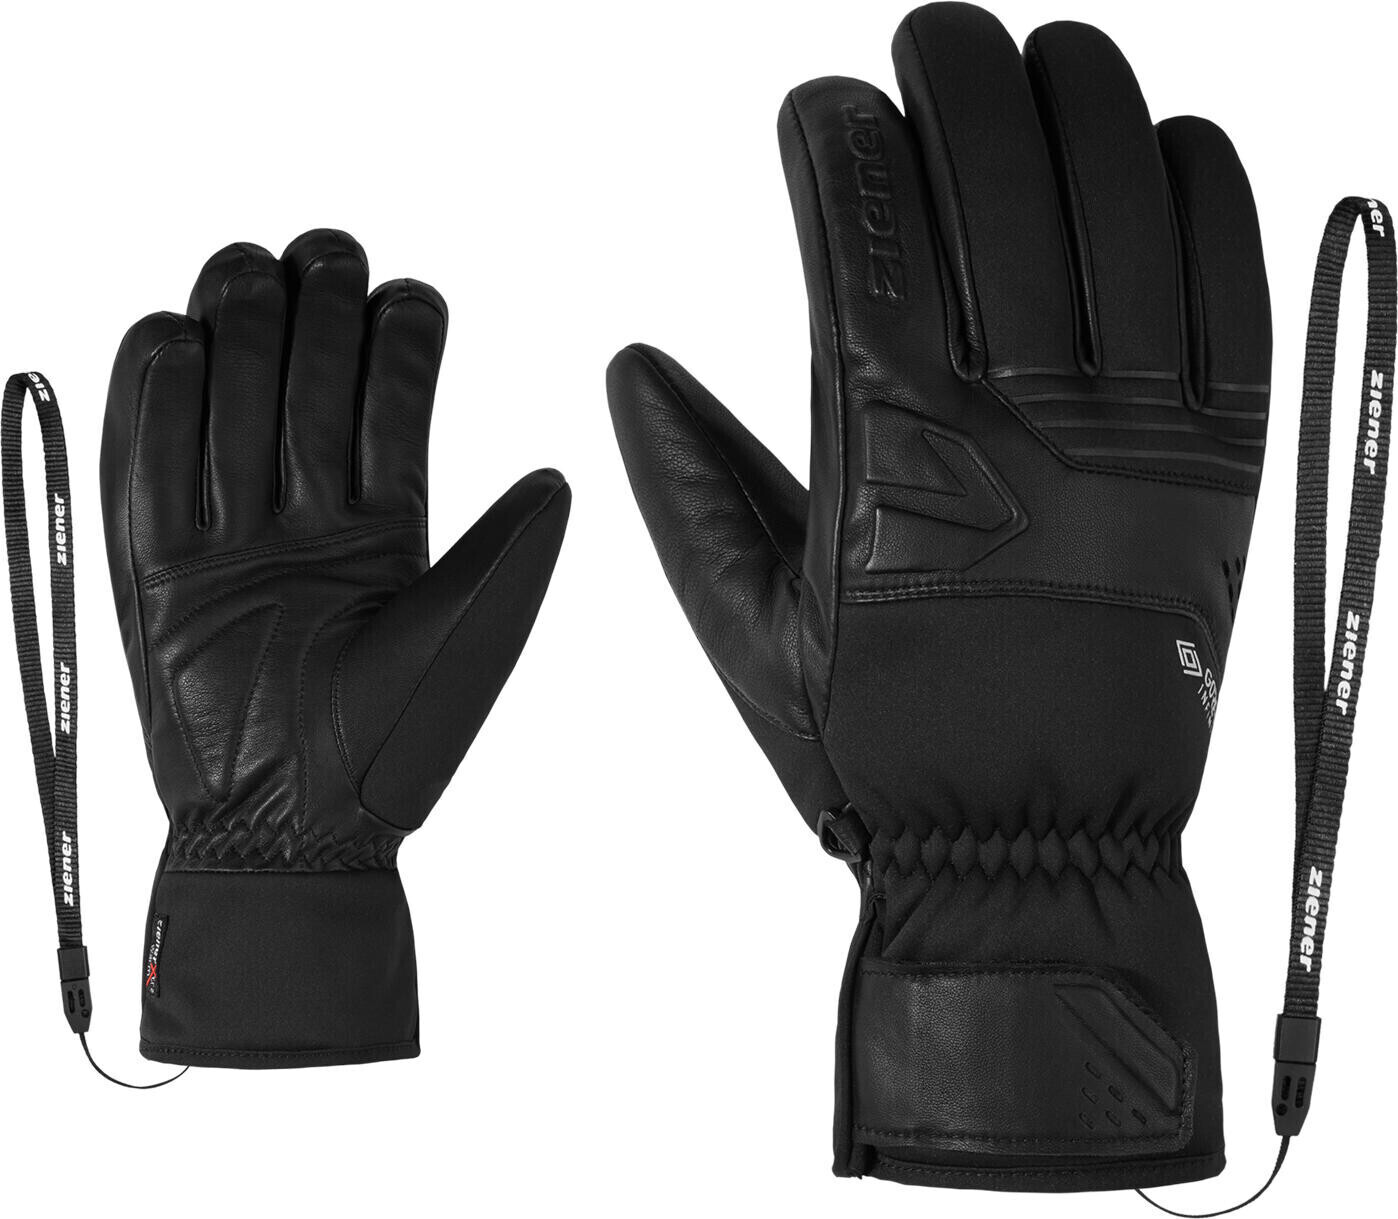 Ziener Gilar GTX INF Glove Ski Alpine black ab 76,95 € | Preisvergleich bei